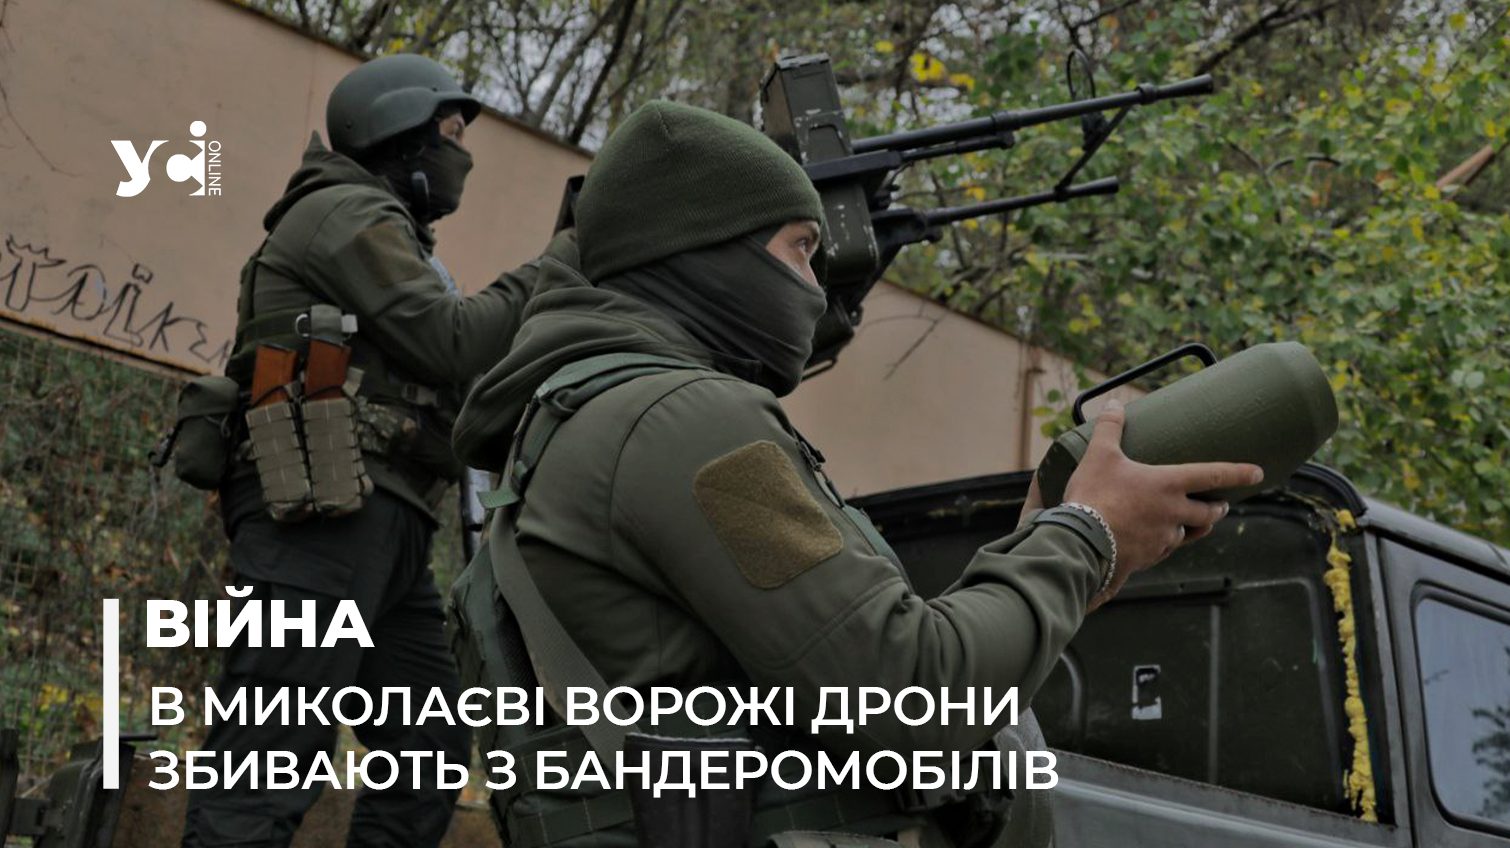 Бандеромобілі: в Миколаєві показали автівки, з яких збивають дрони (фото, відео) «фото»